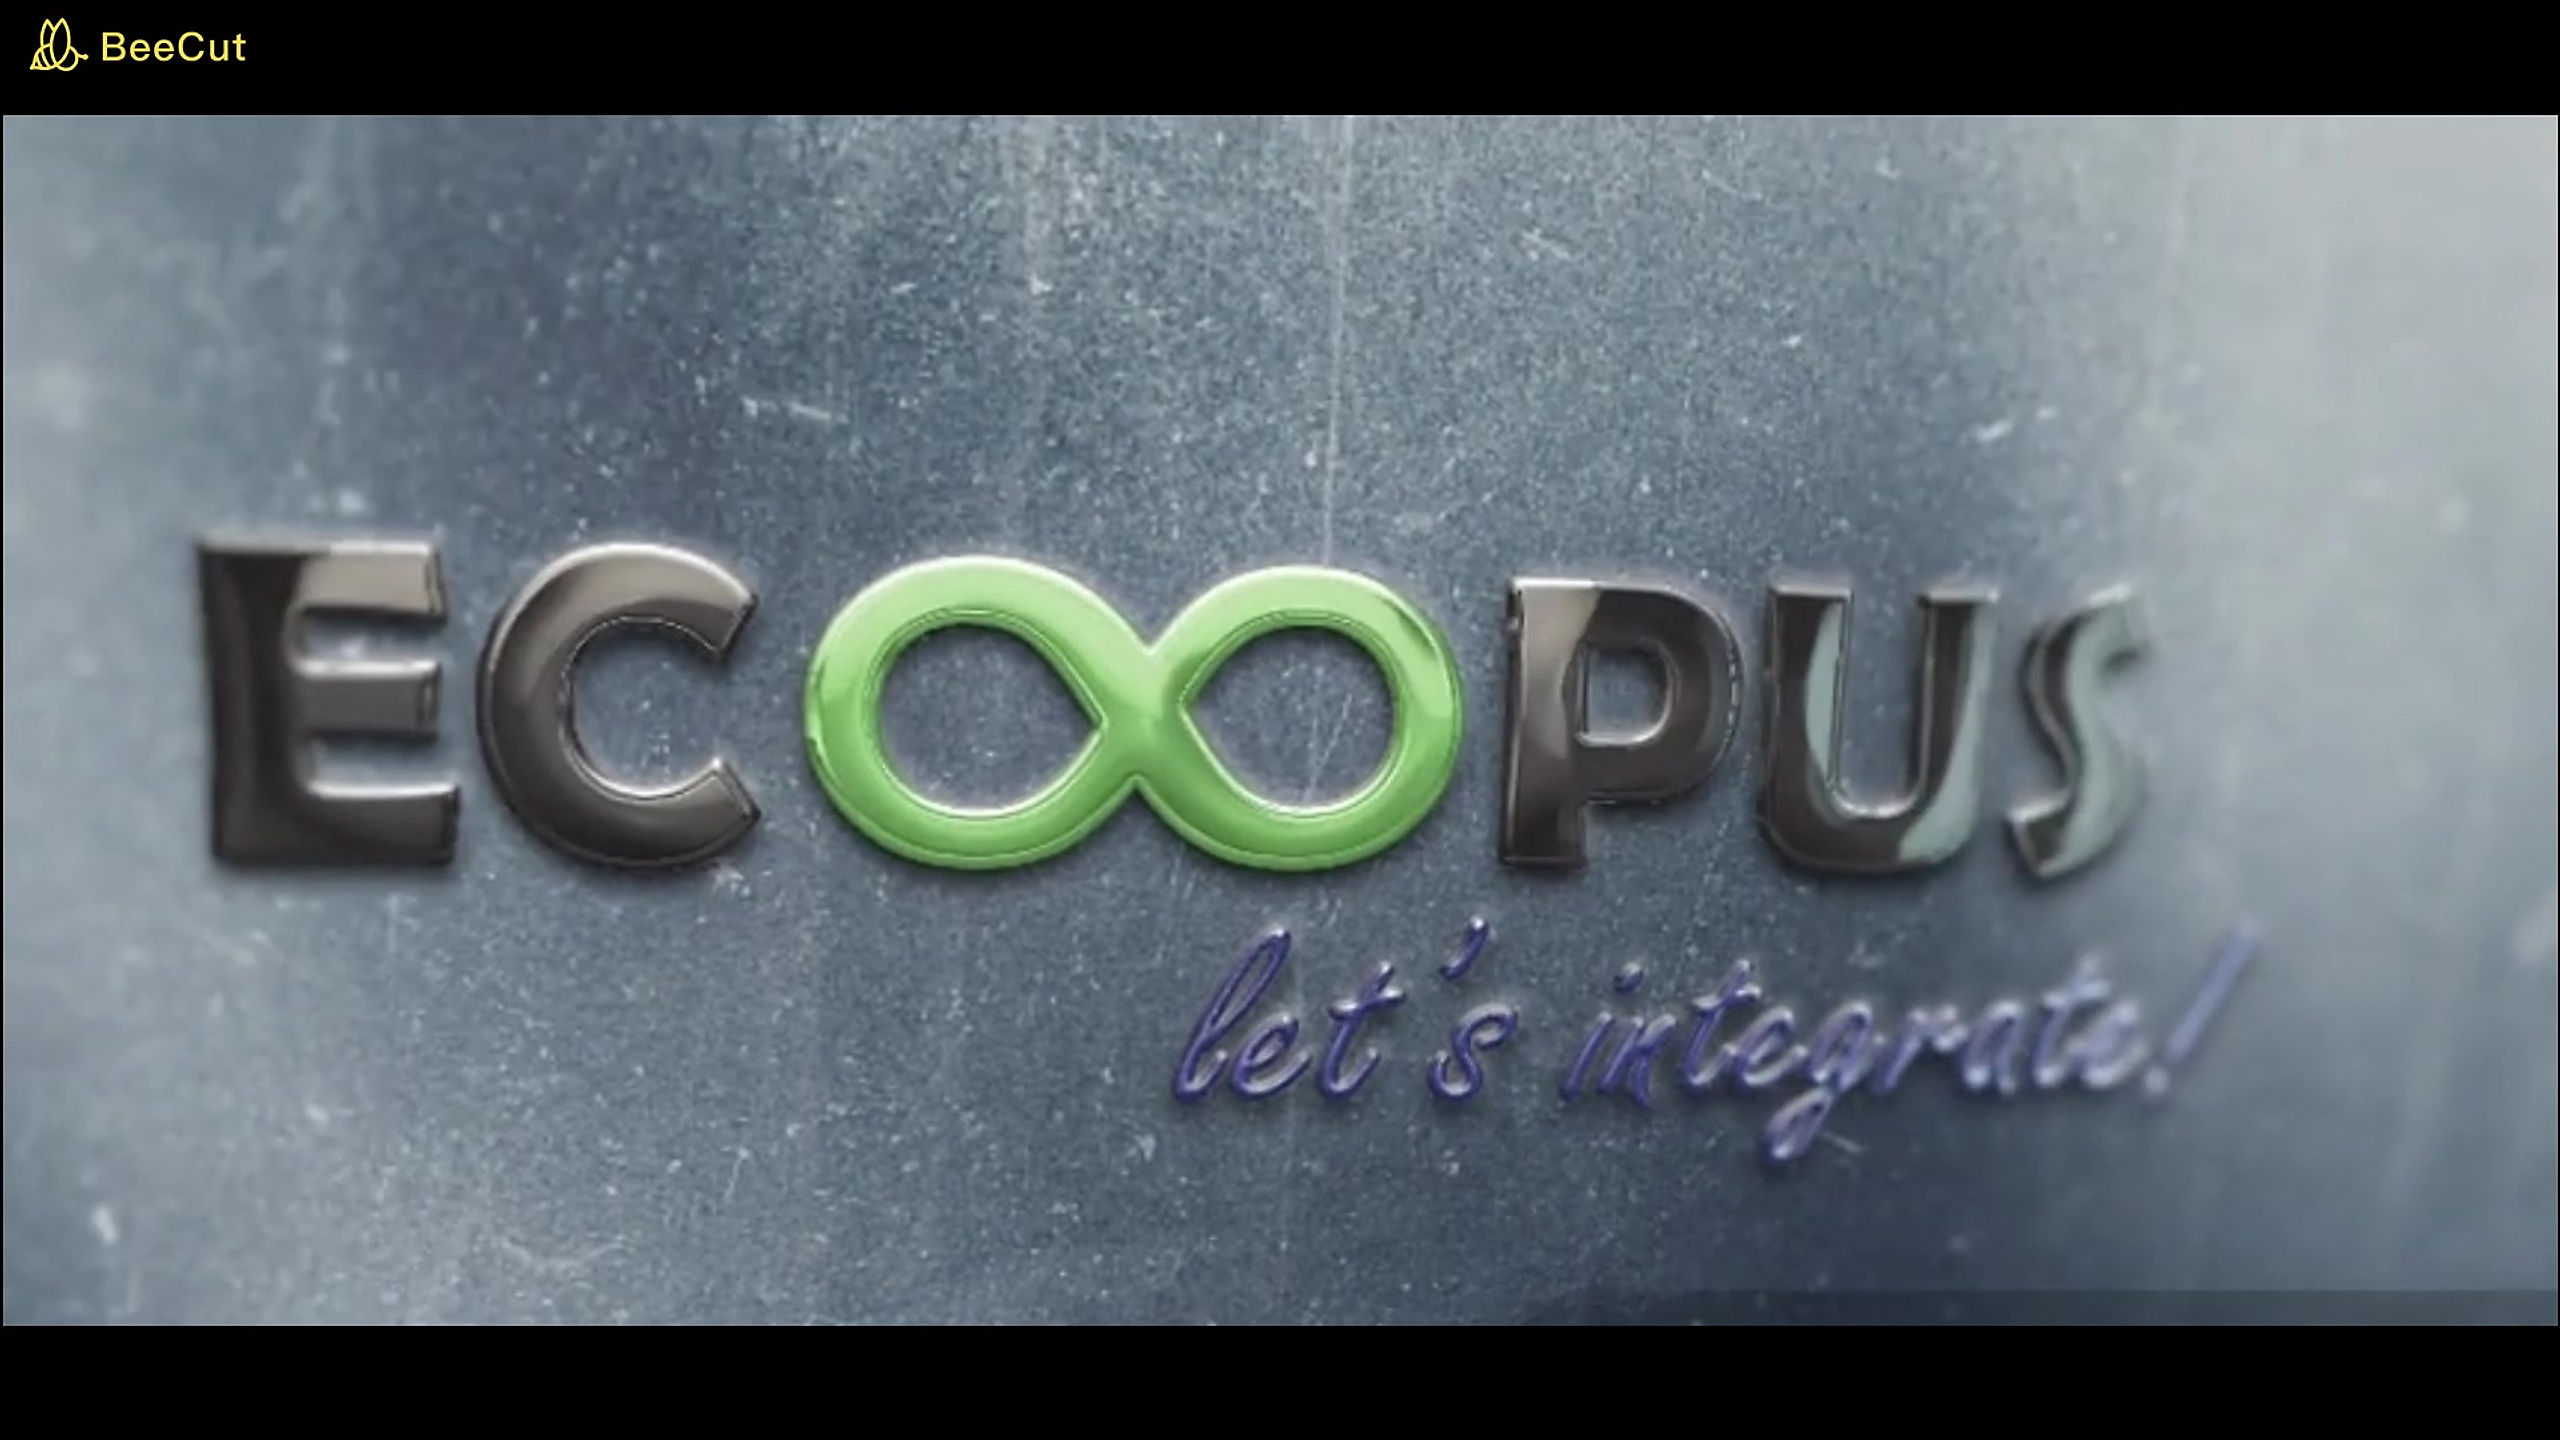 EcoOpus Agri Ventures Private Limited